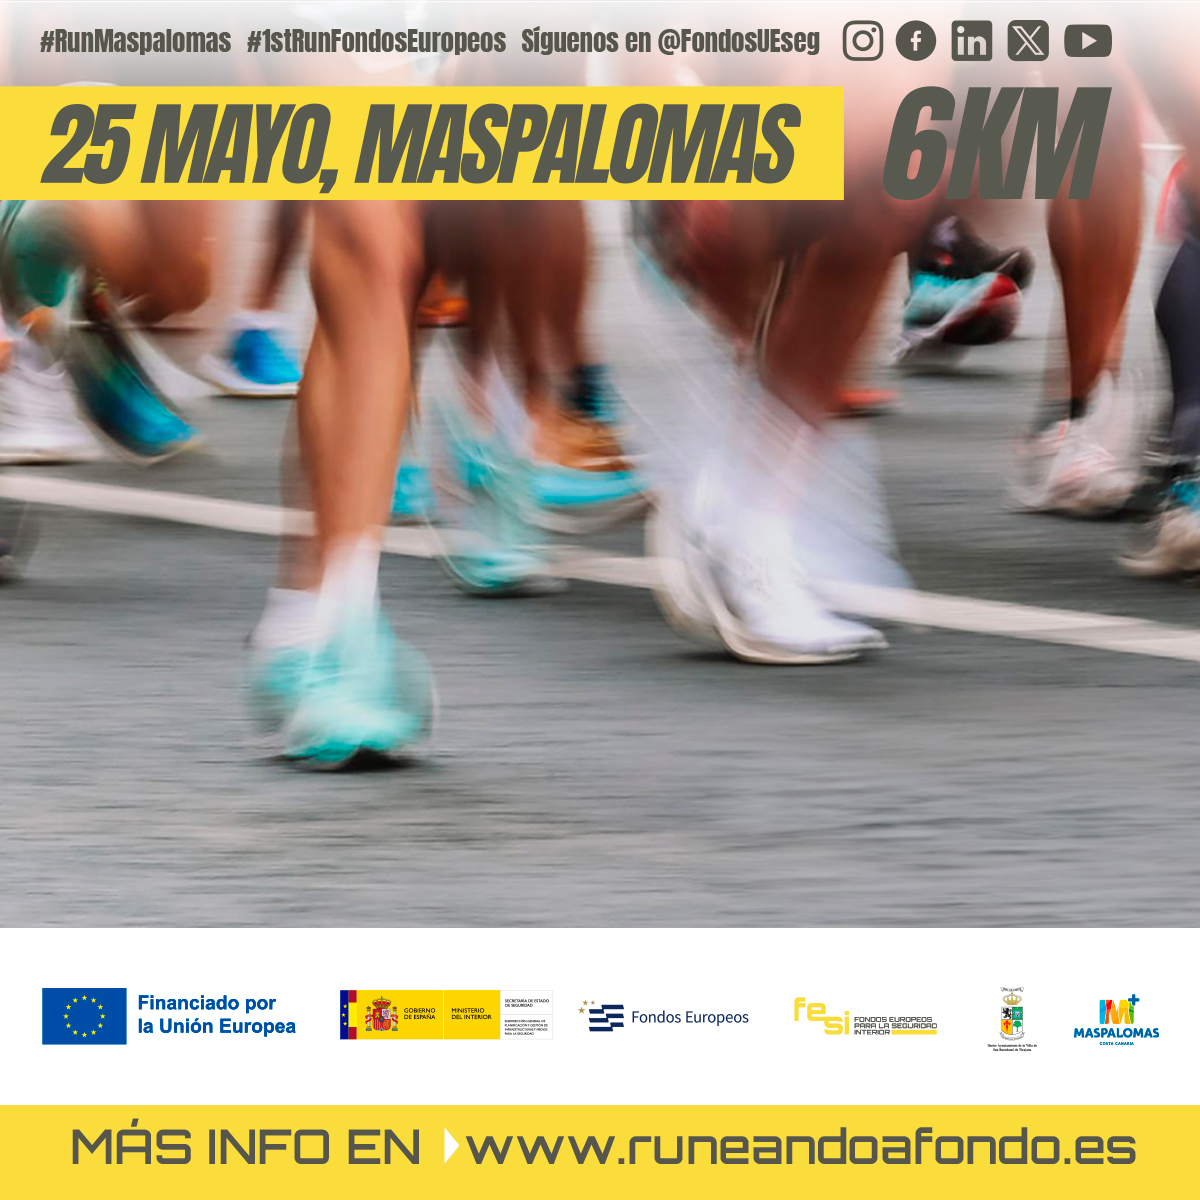 💙Celebramos💛Europa💙 🏃🇪🇺El 25 de mayo, en Maspalomas, Gran Canaria, prepárate para 'runear' con los Fondos Europeos. ☀ 🏝 ¡No te quedes atrás! Inscríbete ya y vive un día inolvidable. ¡Inscríbete YA! 👉 runeandoafondo.es #RunMaspalomas #1stRunFondosEuropeos